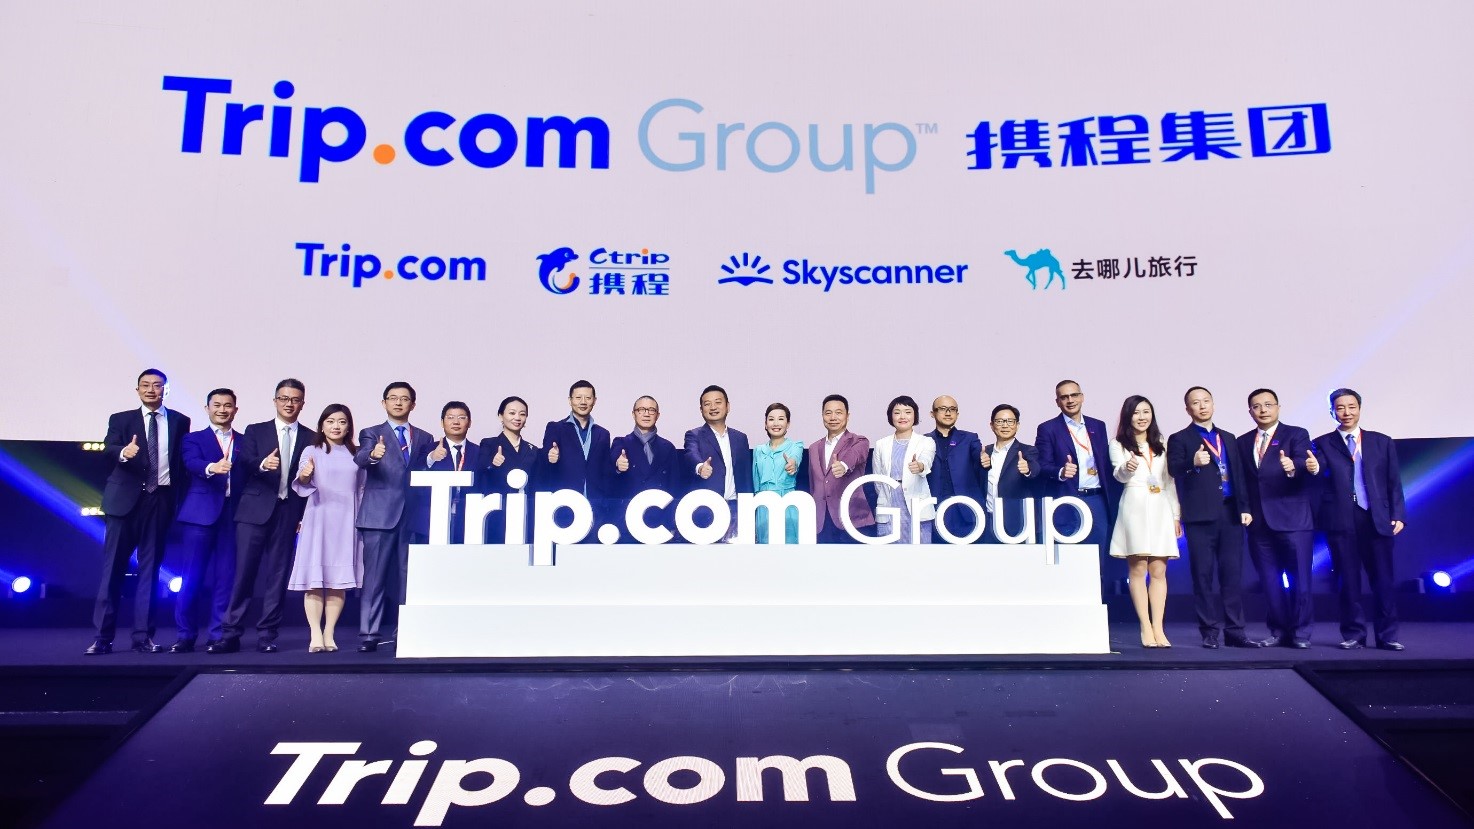 携程集团创始人、携程集团高管团队共同揭幕新集团英文名“Trip.com Group”